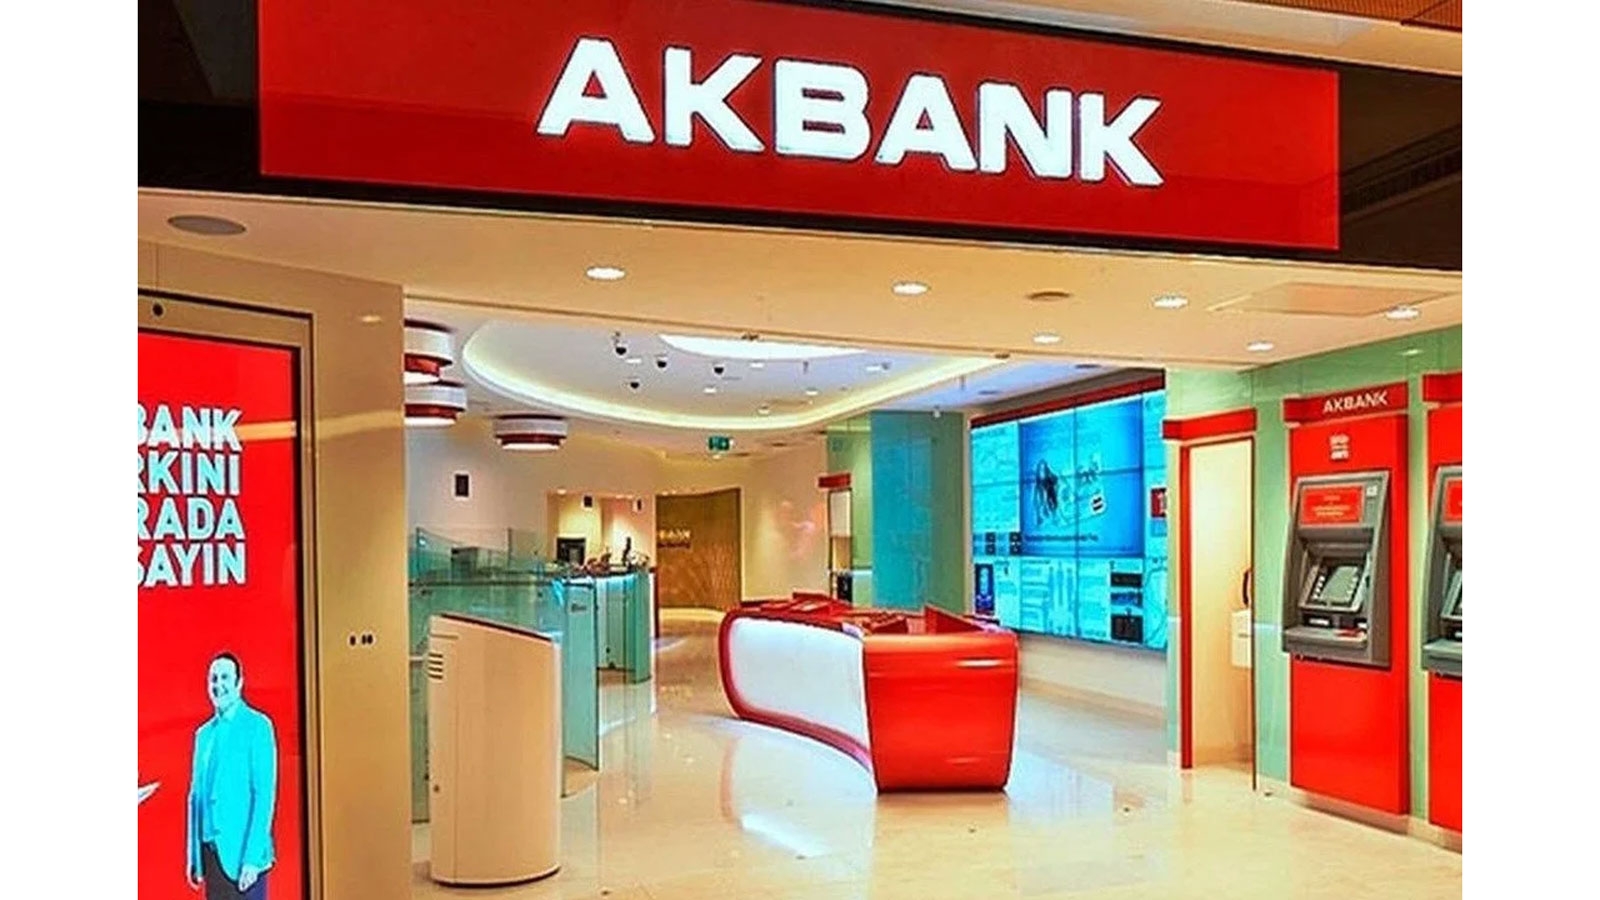 Akbank Son 4 Gün Uyarısı: Başvuranların Hesaplarına 3 Bin Lira Yatırılacak!